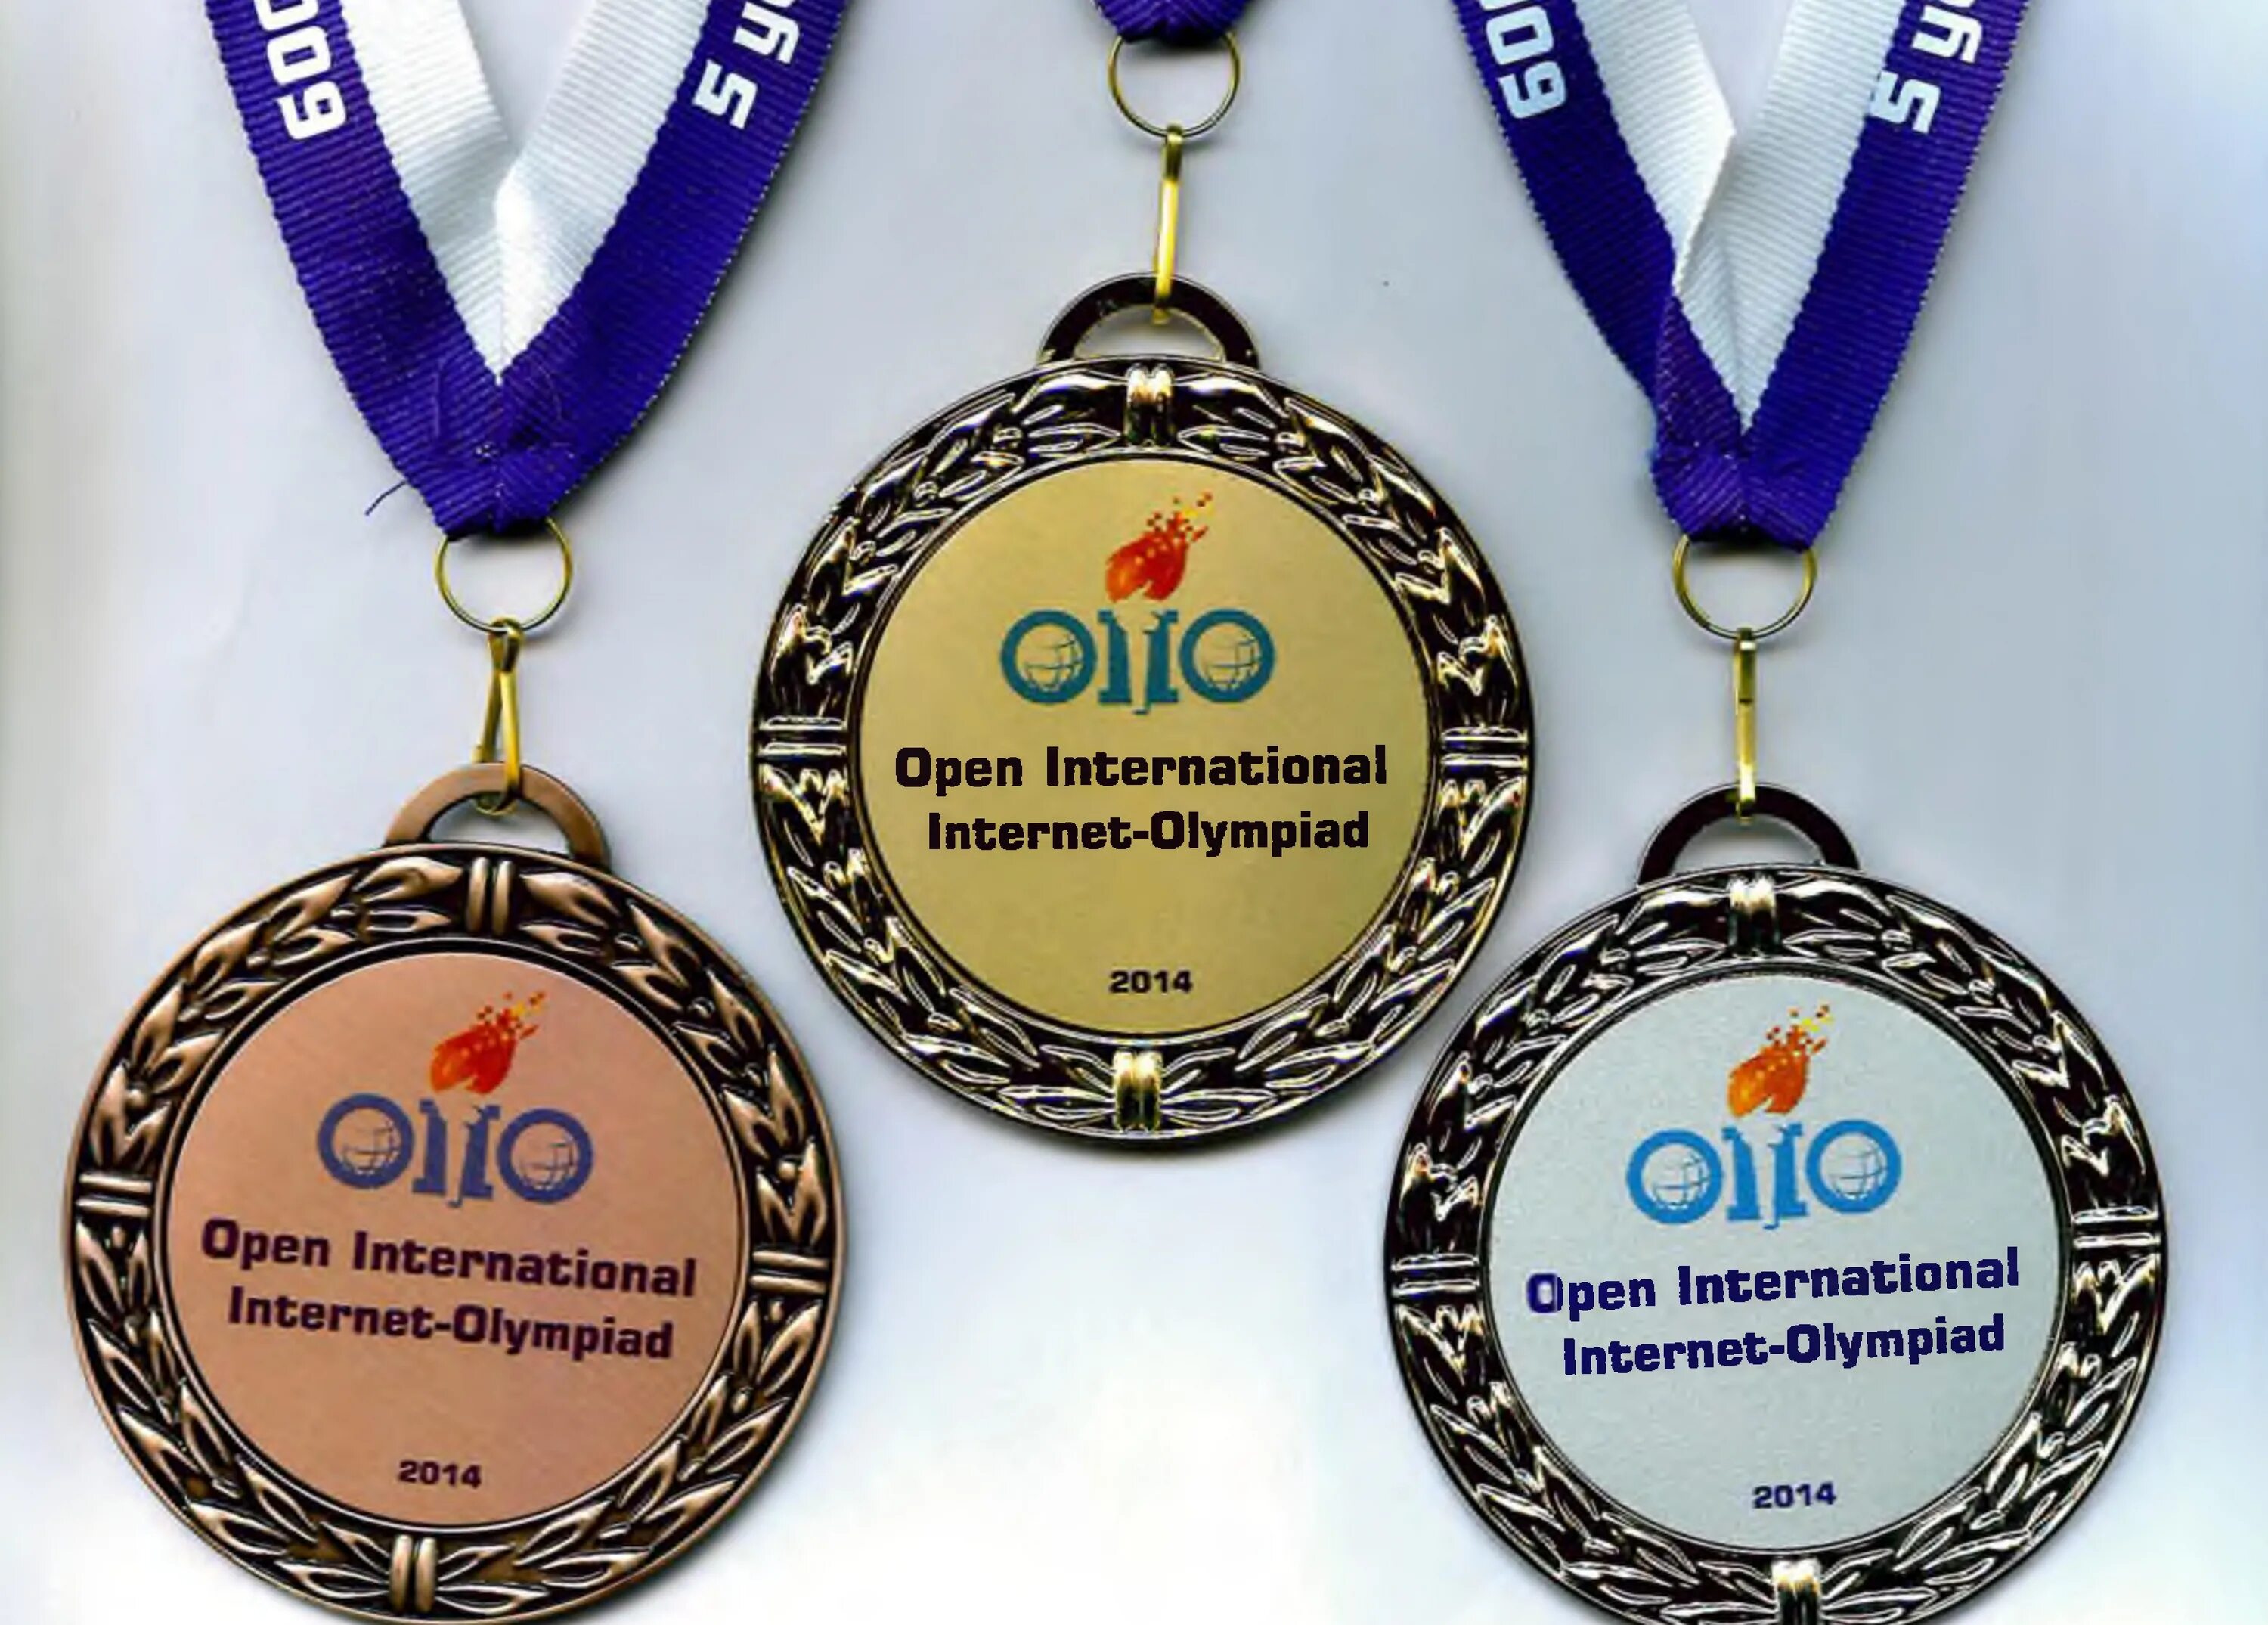 Открытой международной студенческой интернет-олимпиады. Международные олимпиады для студентов.